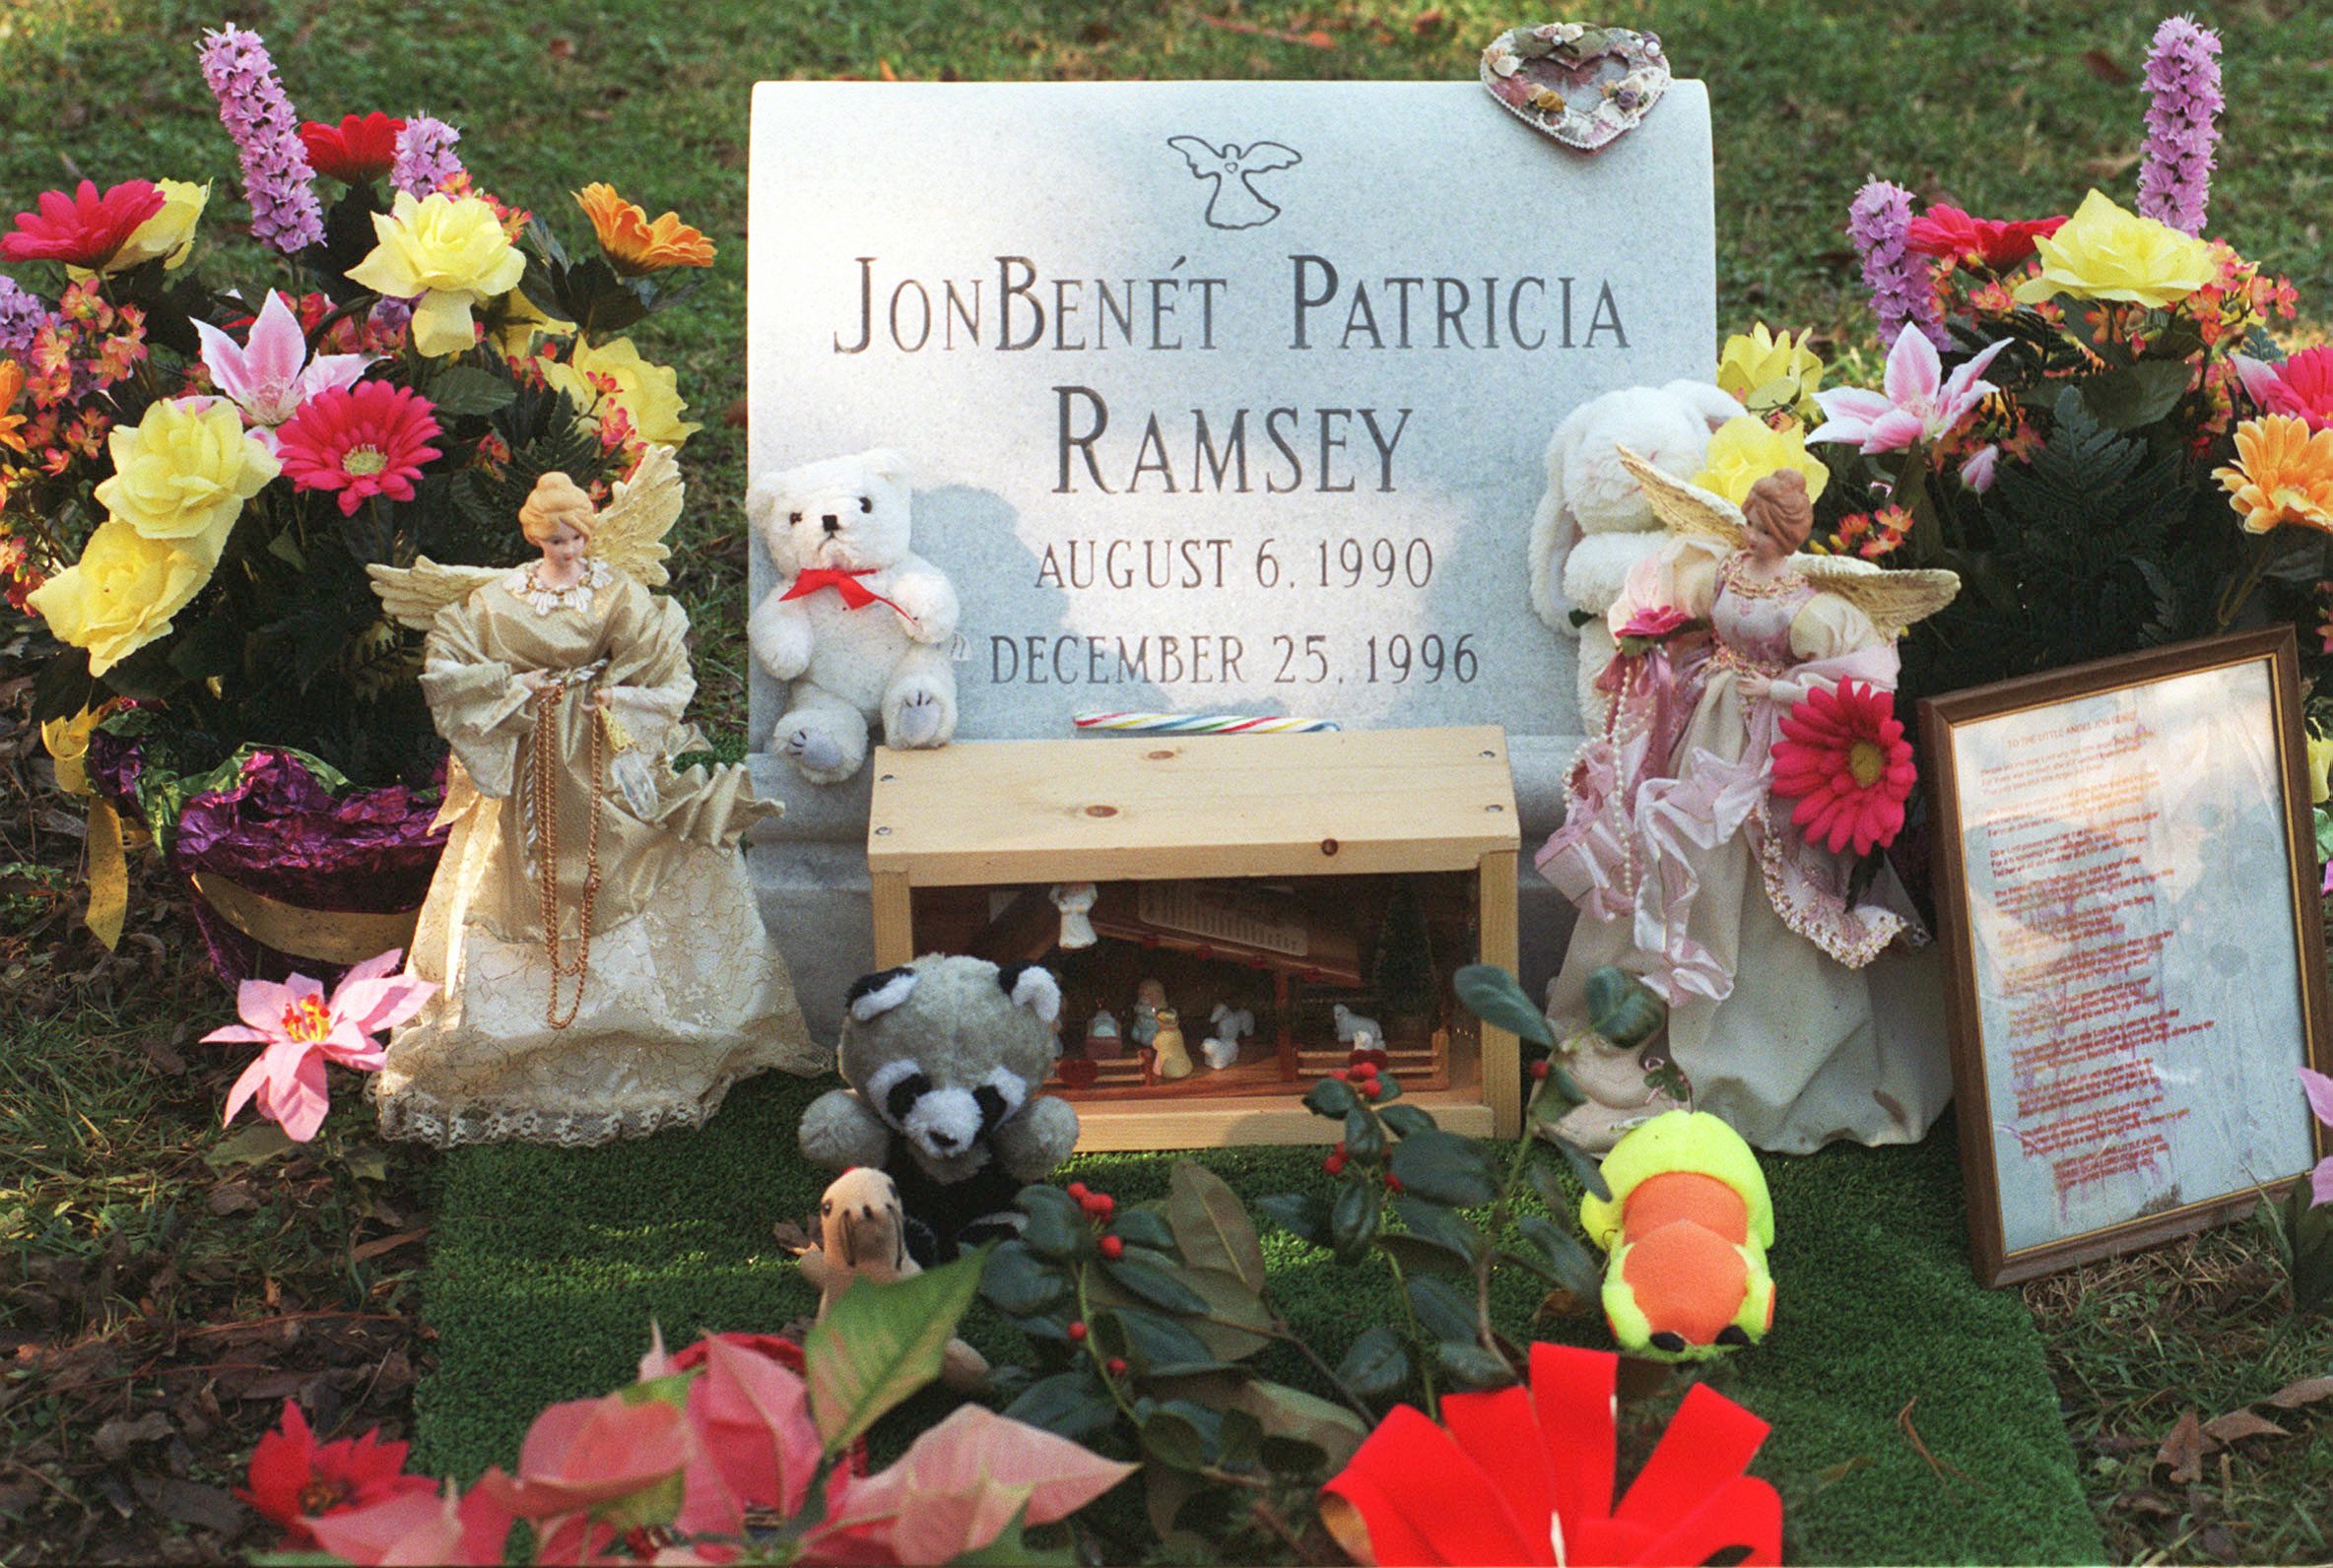 La tombe de JonBenet Ramsey, on ne sait toujours pas qui l'a assassinée.